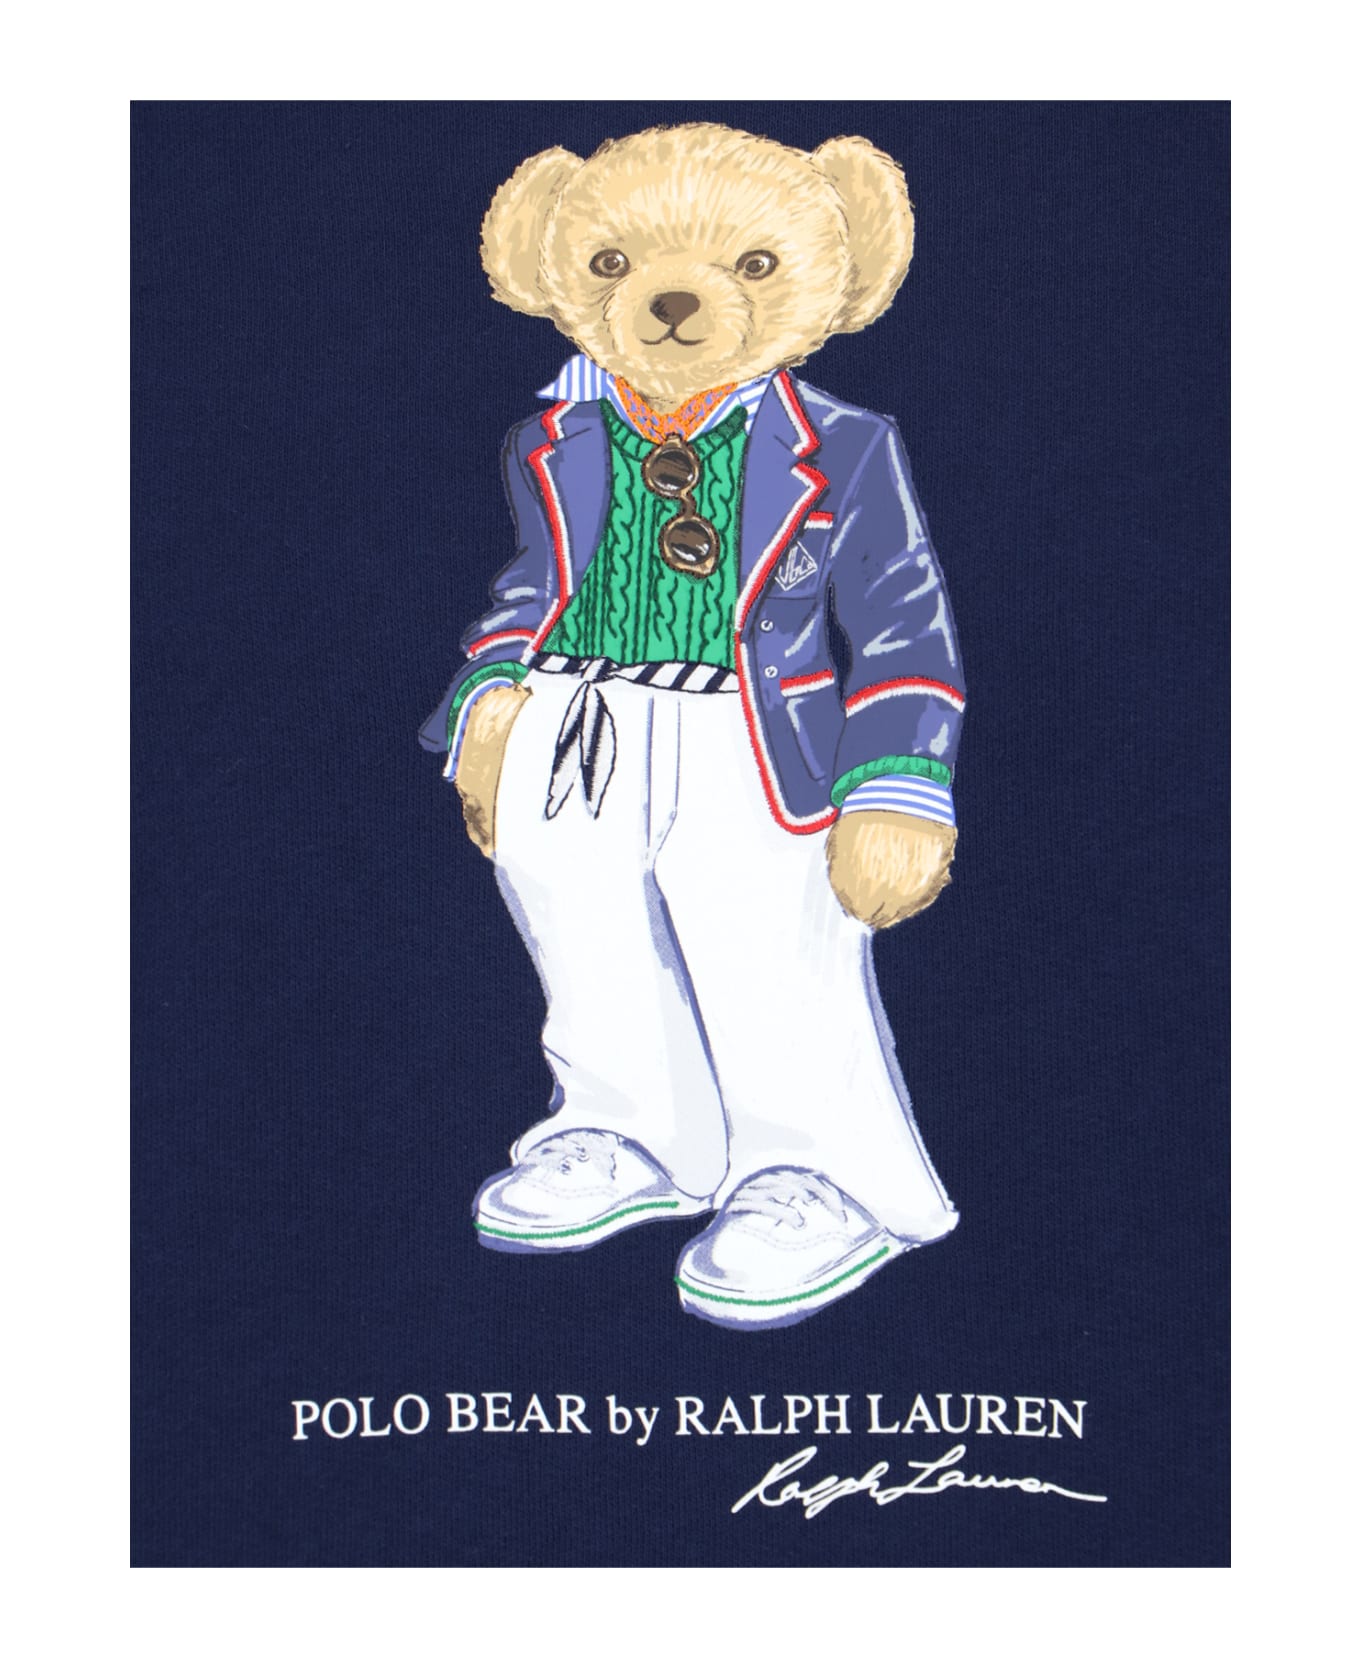 Polo Ralph Lauren 'bear' Crew Neck Sweatshirt - Blue フリース